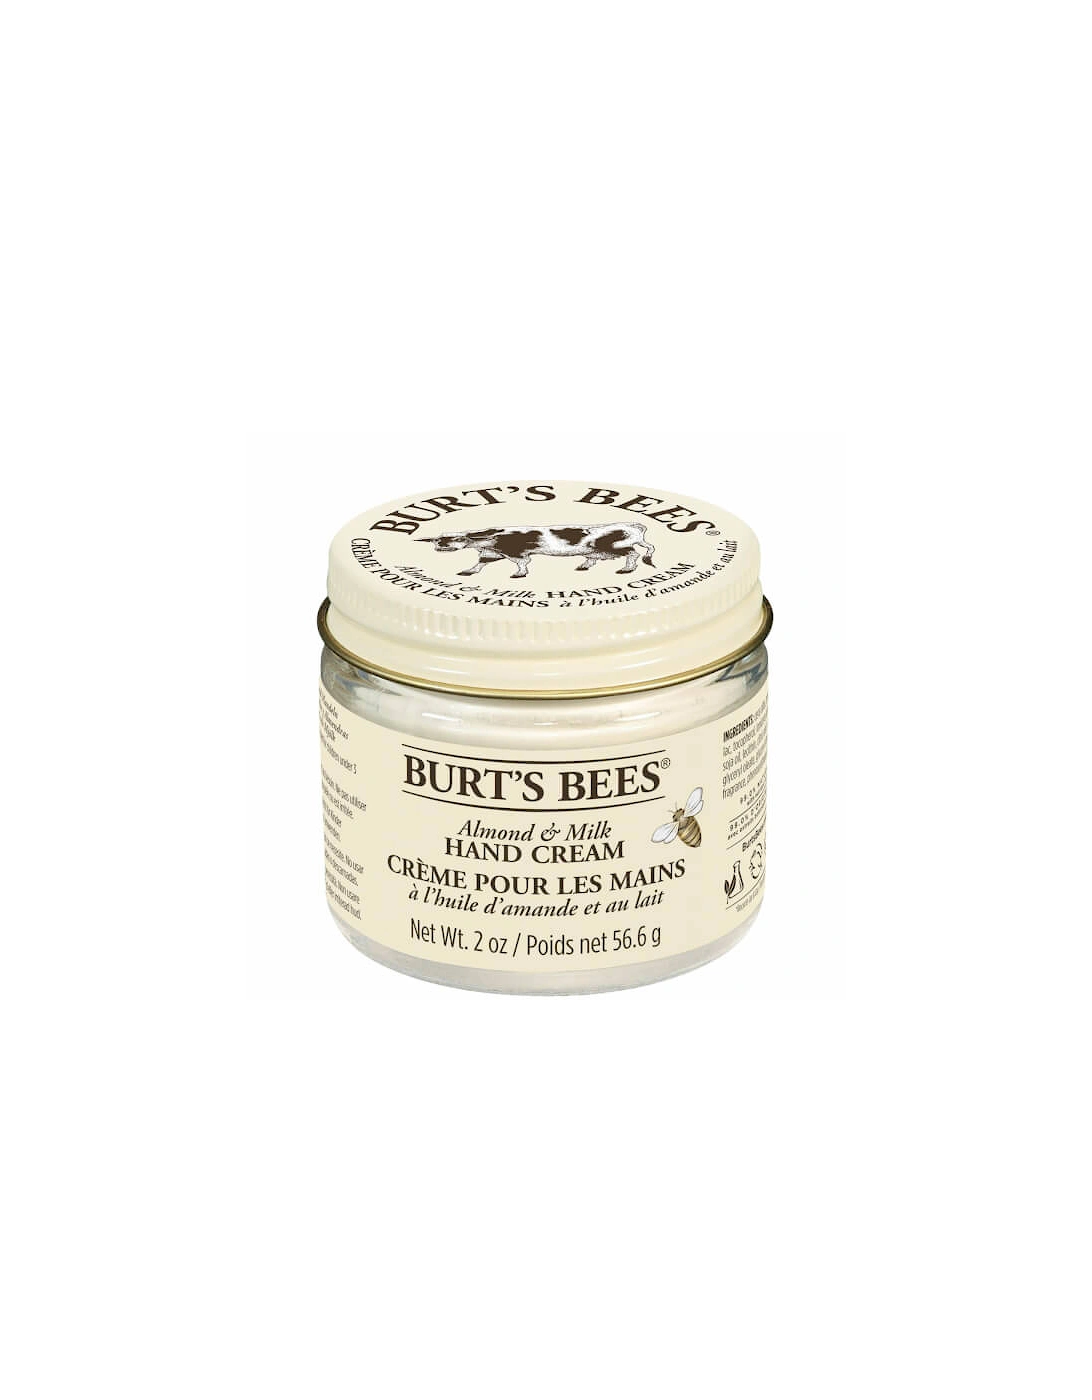 Almond & Milk Hand Cream 56.6g - Burt's Bees, 2 of 1